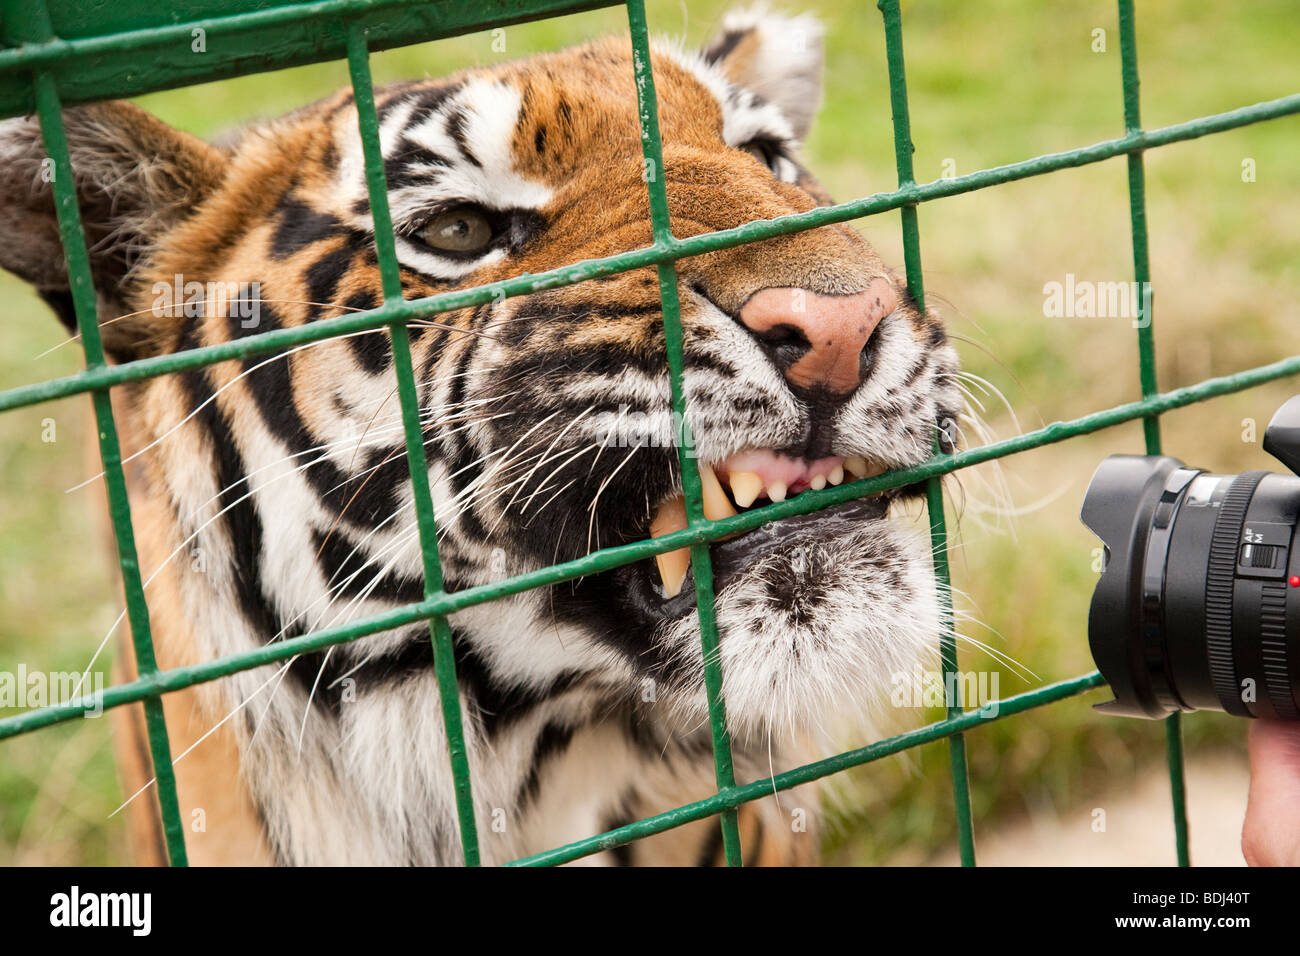 Tiger appaiono essere arrabbiati per avere la sua fotografia scattata Foto Stock